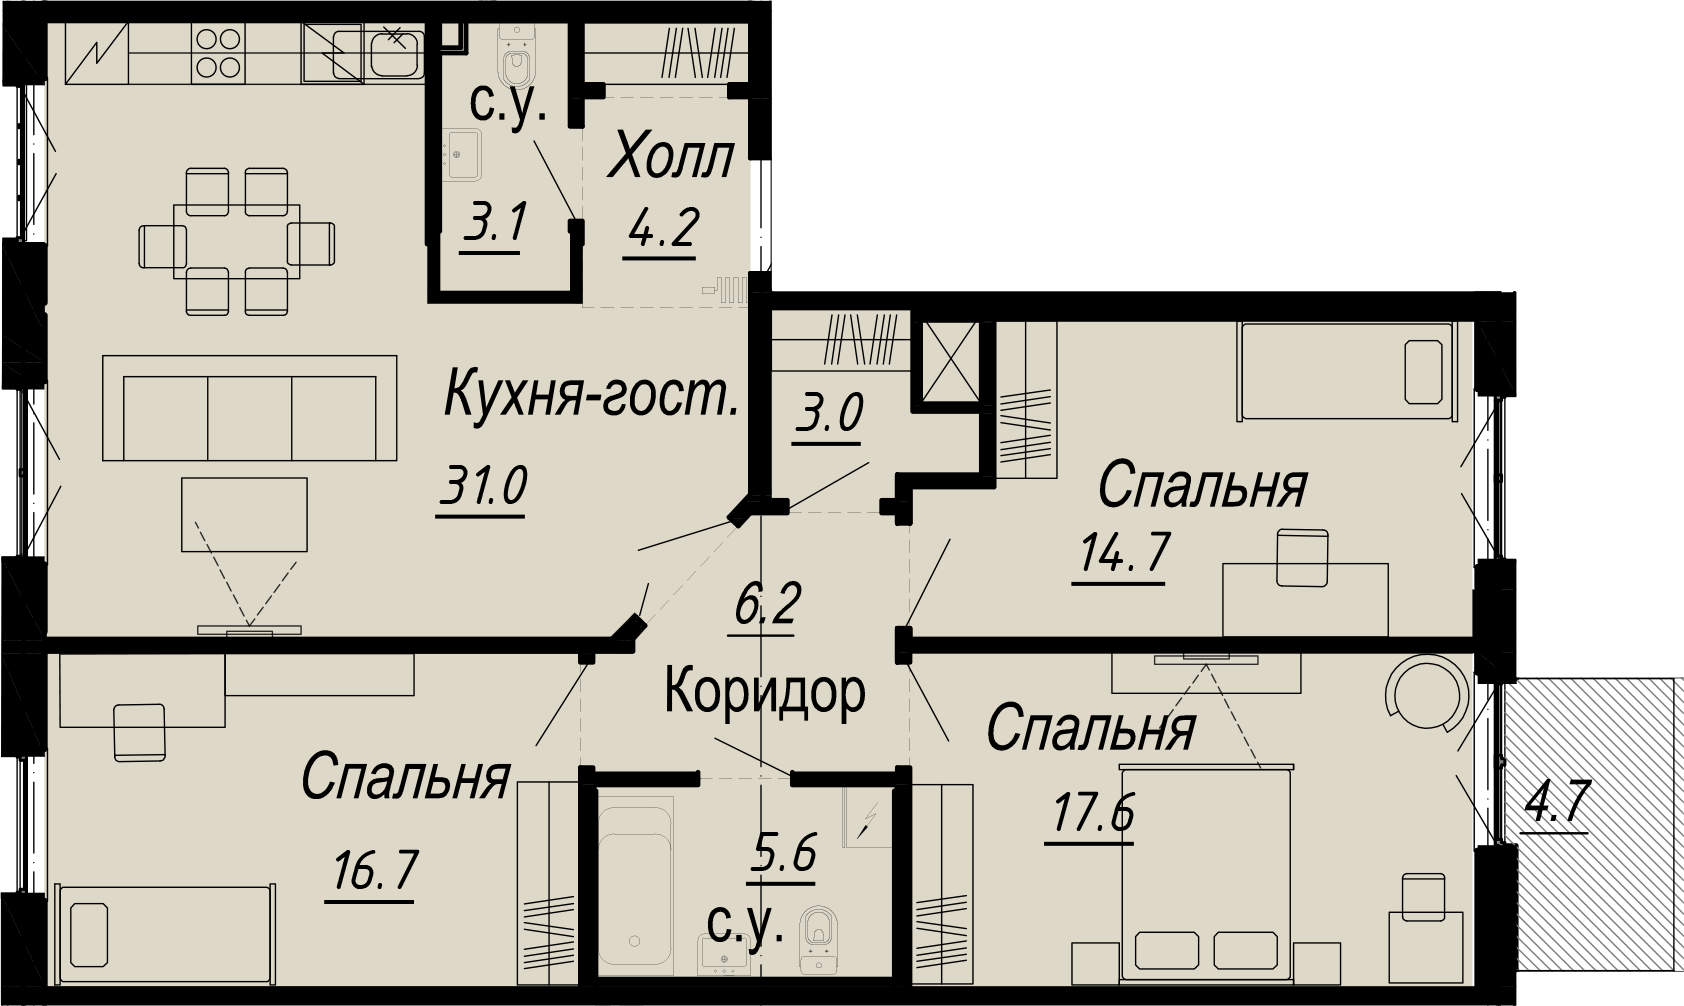 3-комнатная квартира  №24-6 в Meltzer Hall: 106.31 м², этаж 6 - купить в Санкт-Петербурге